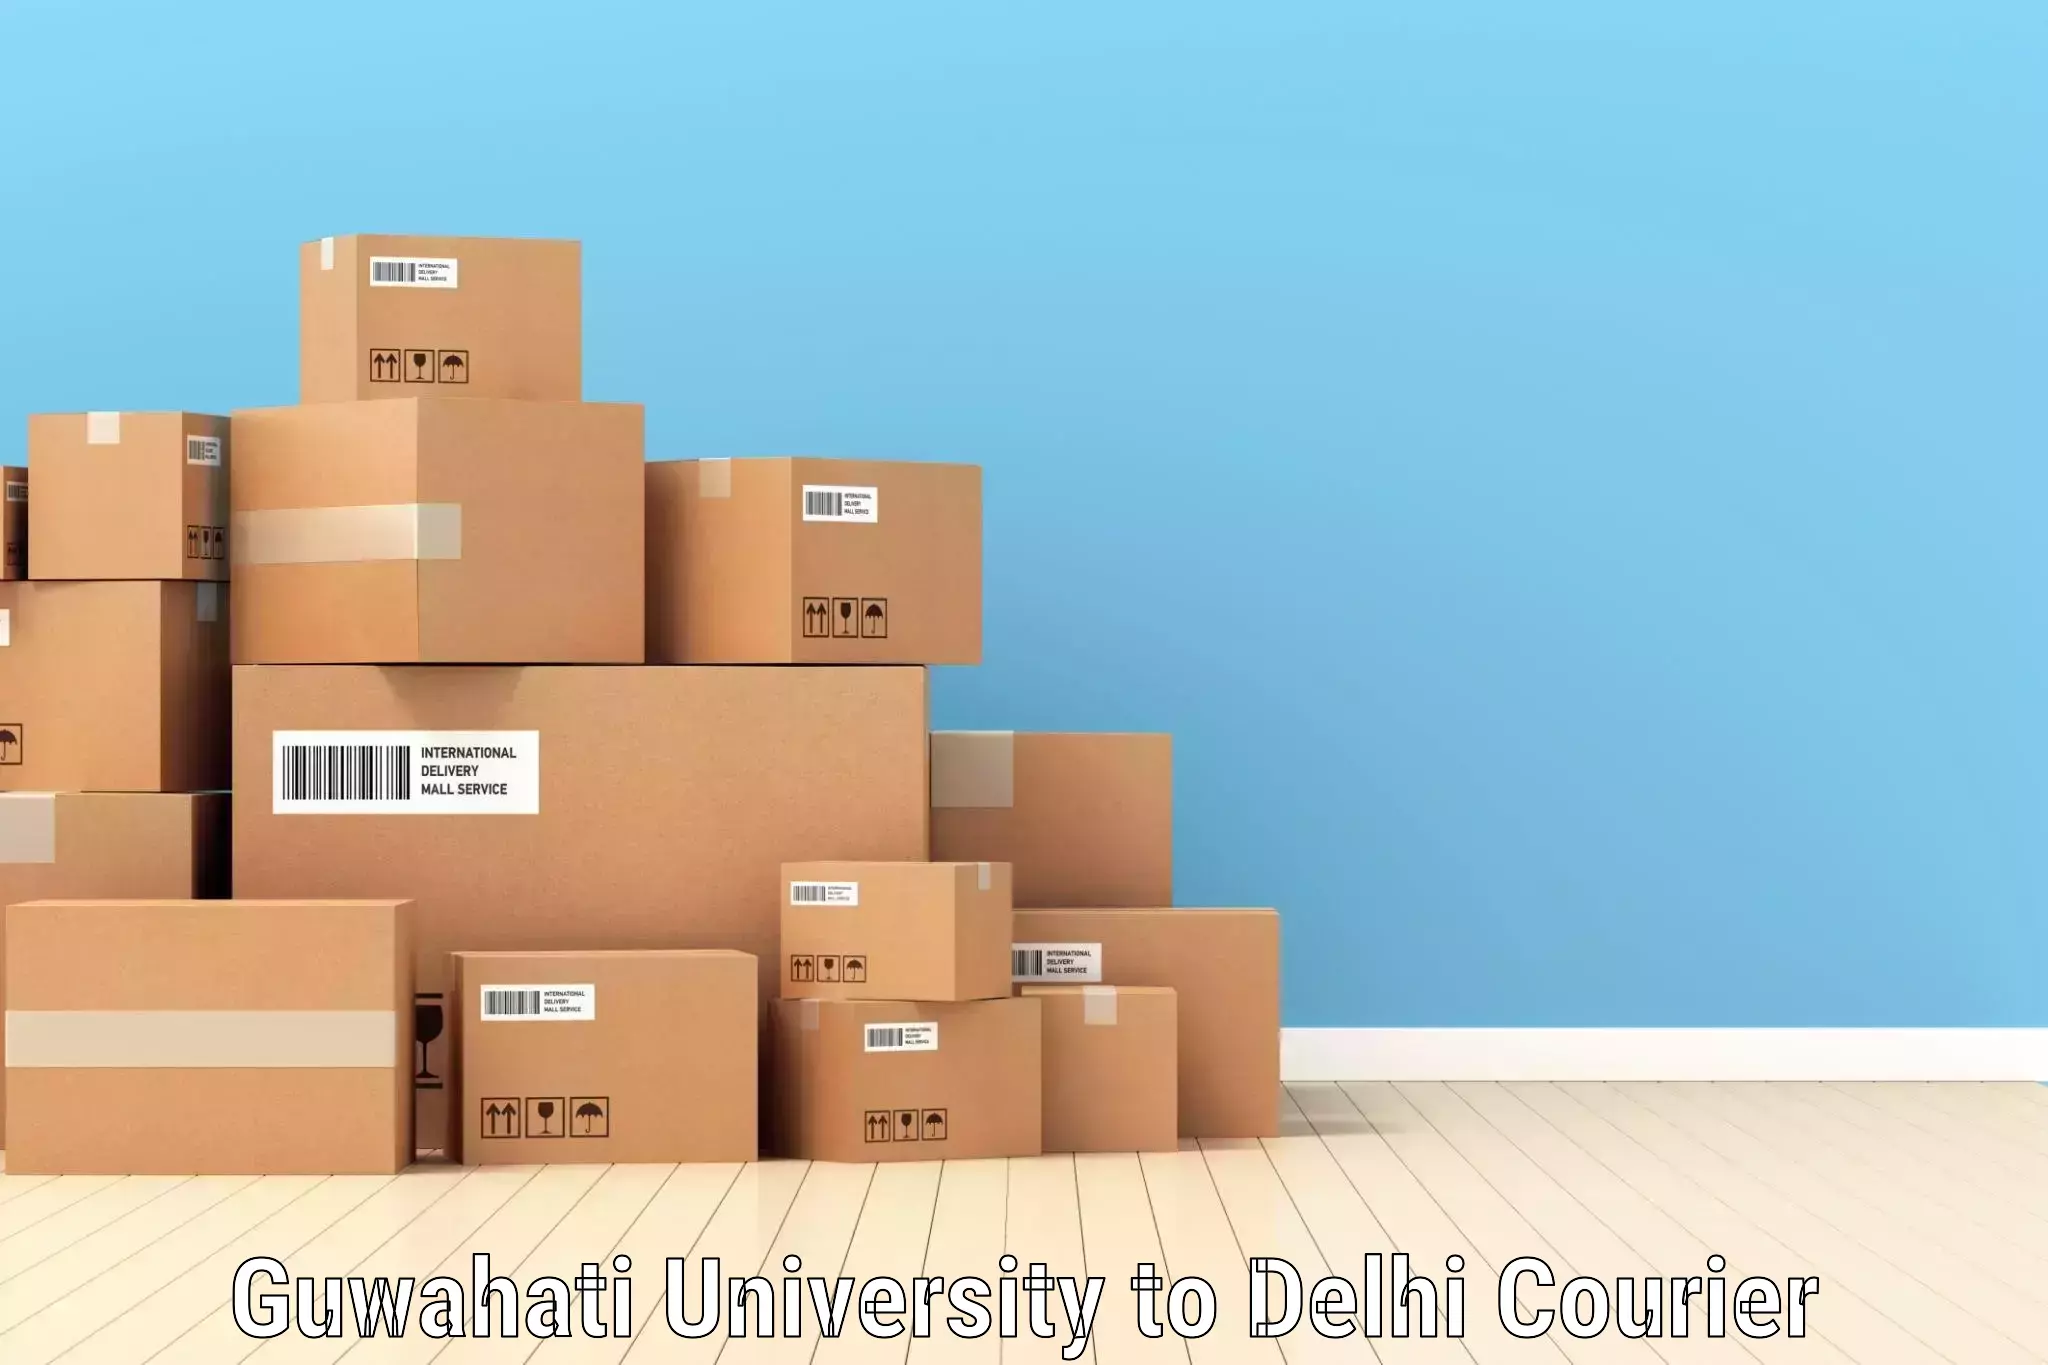 Local courier options Guwahati University to Jawaharlal Nehru University New Delhi